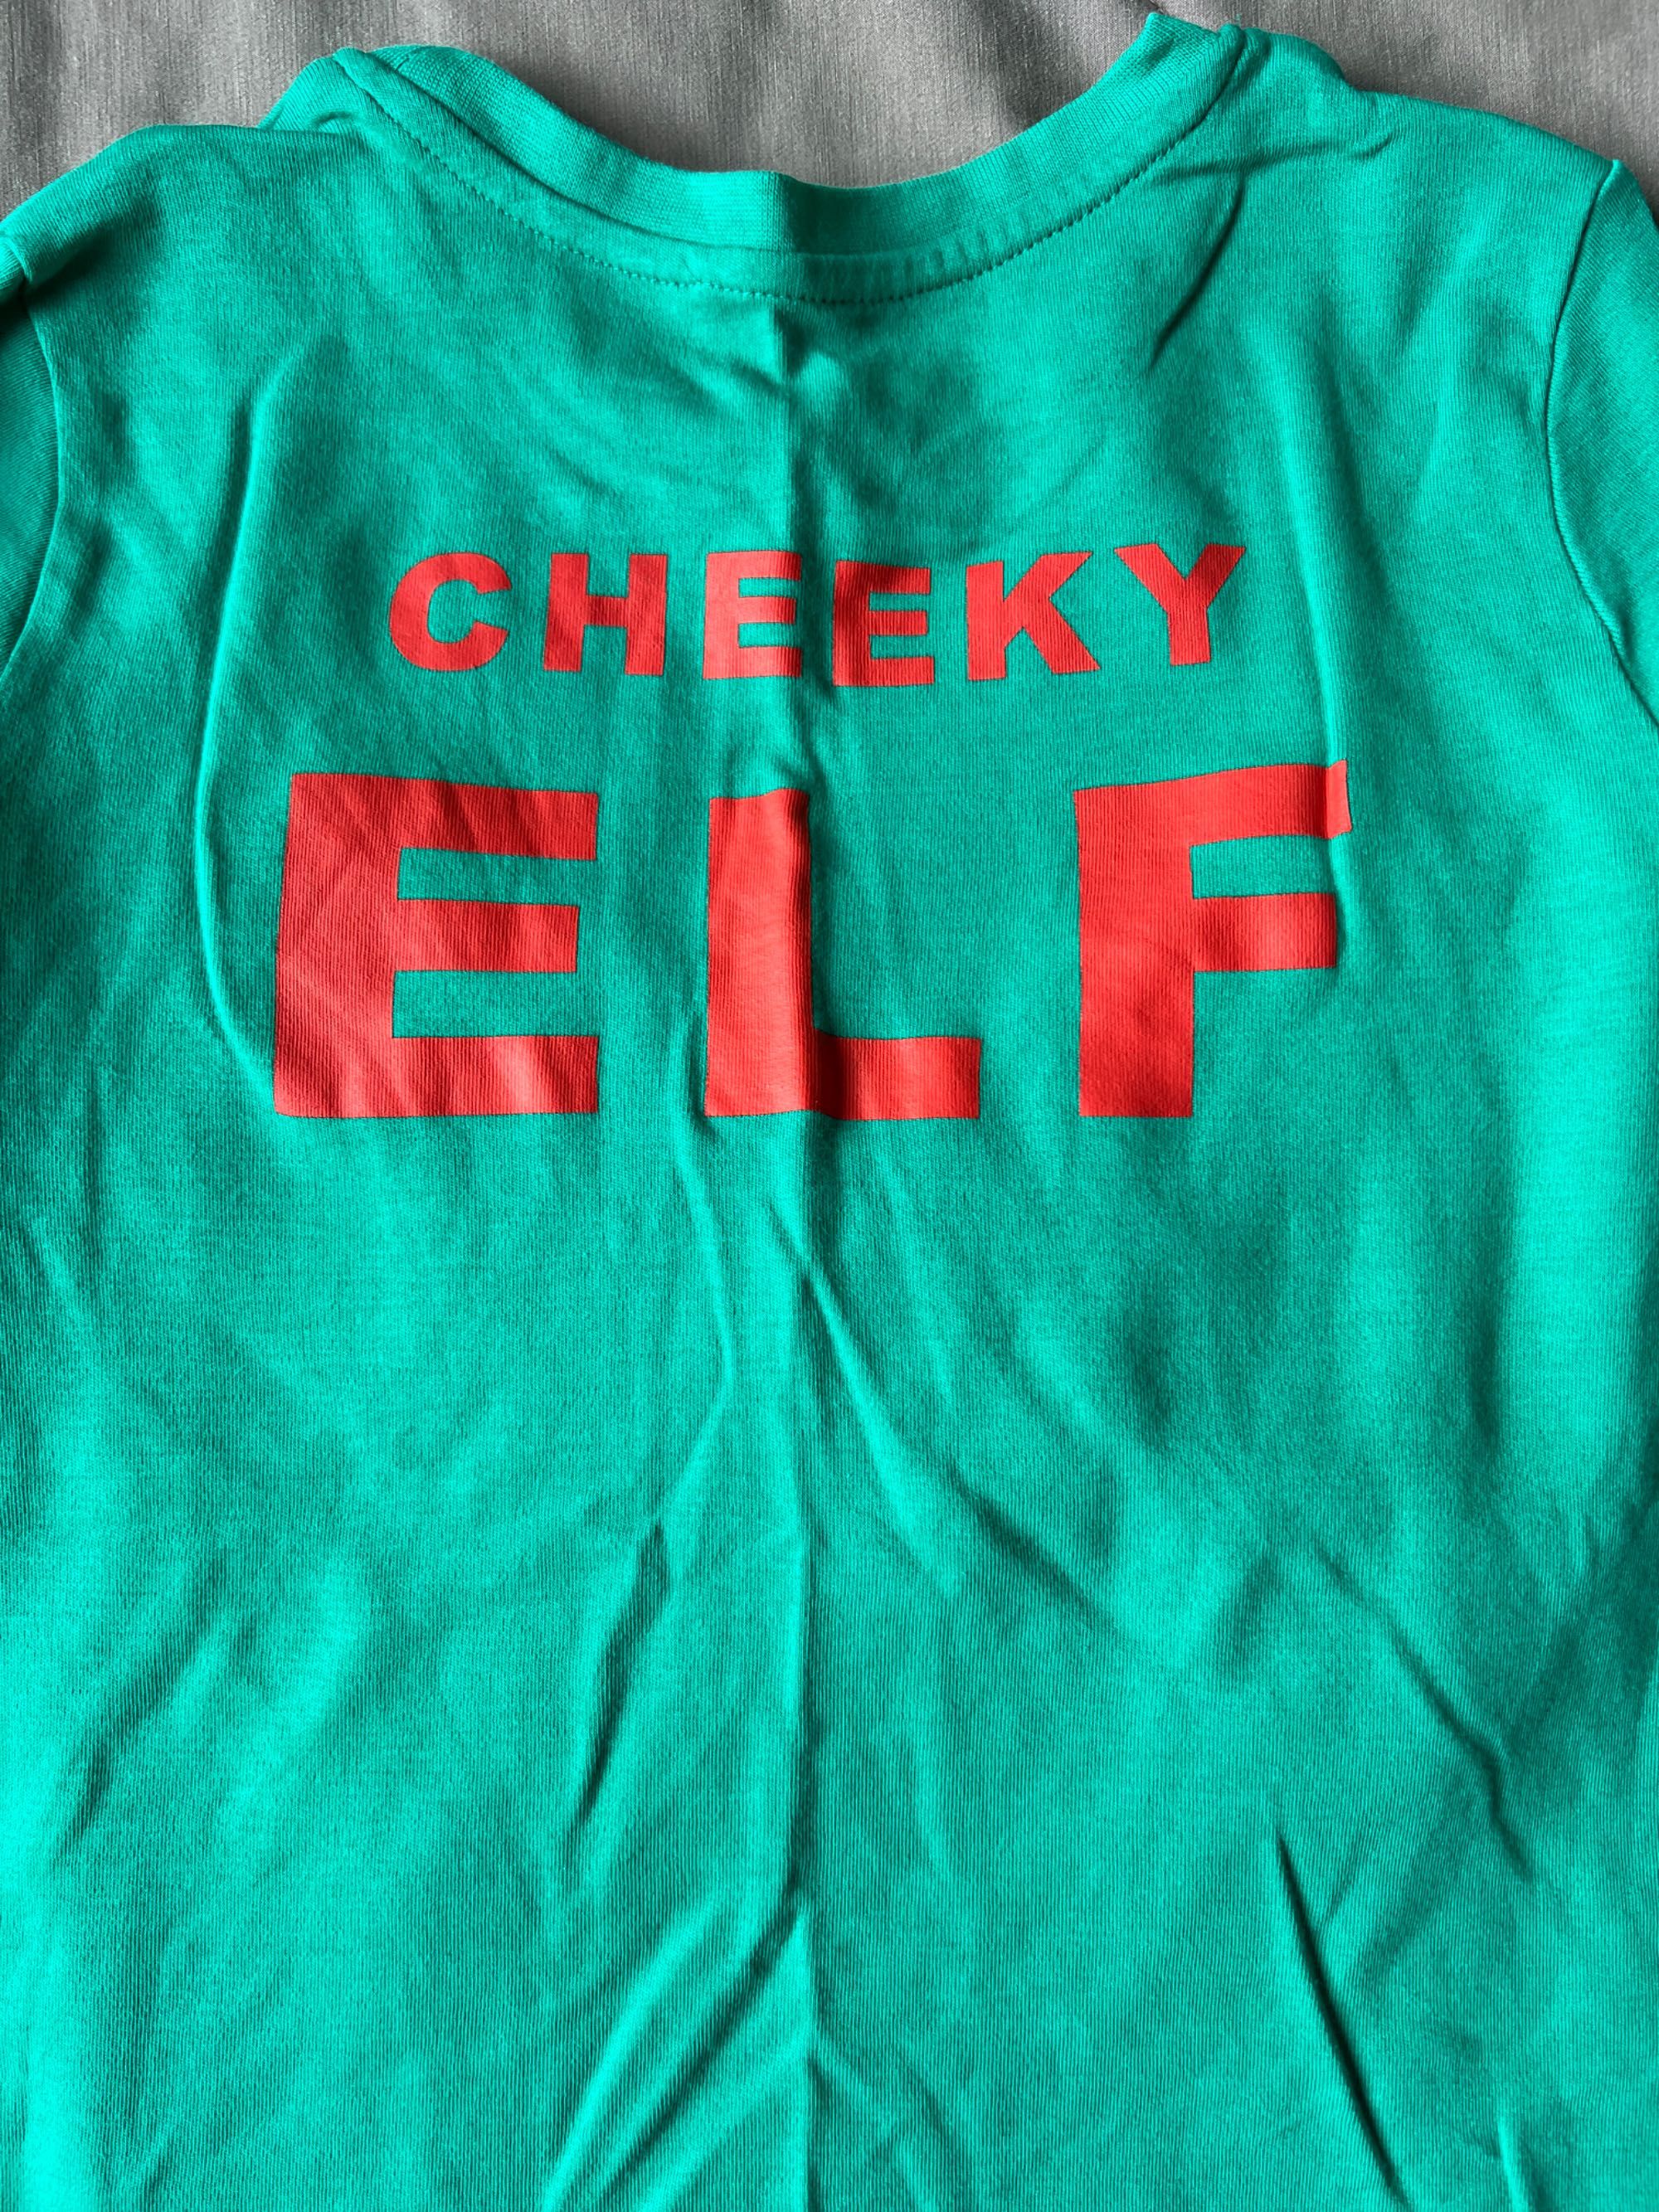 George zielona bluzka góra od piżamy piżama Elf świąteczna Cheeky Elf